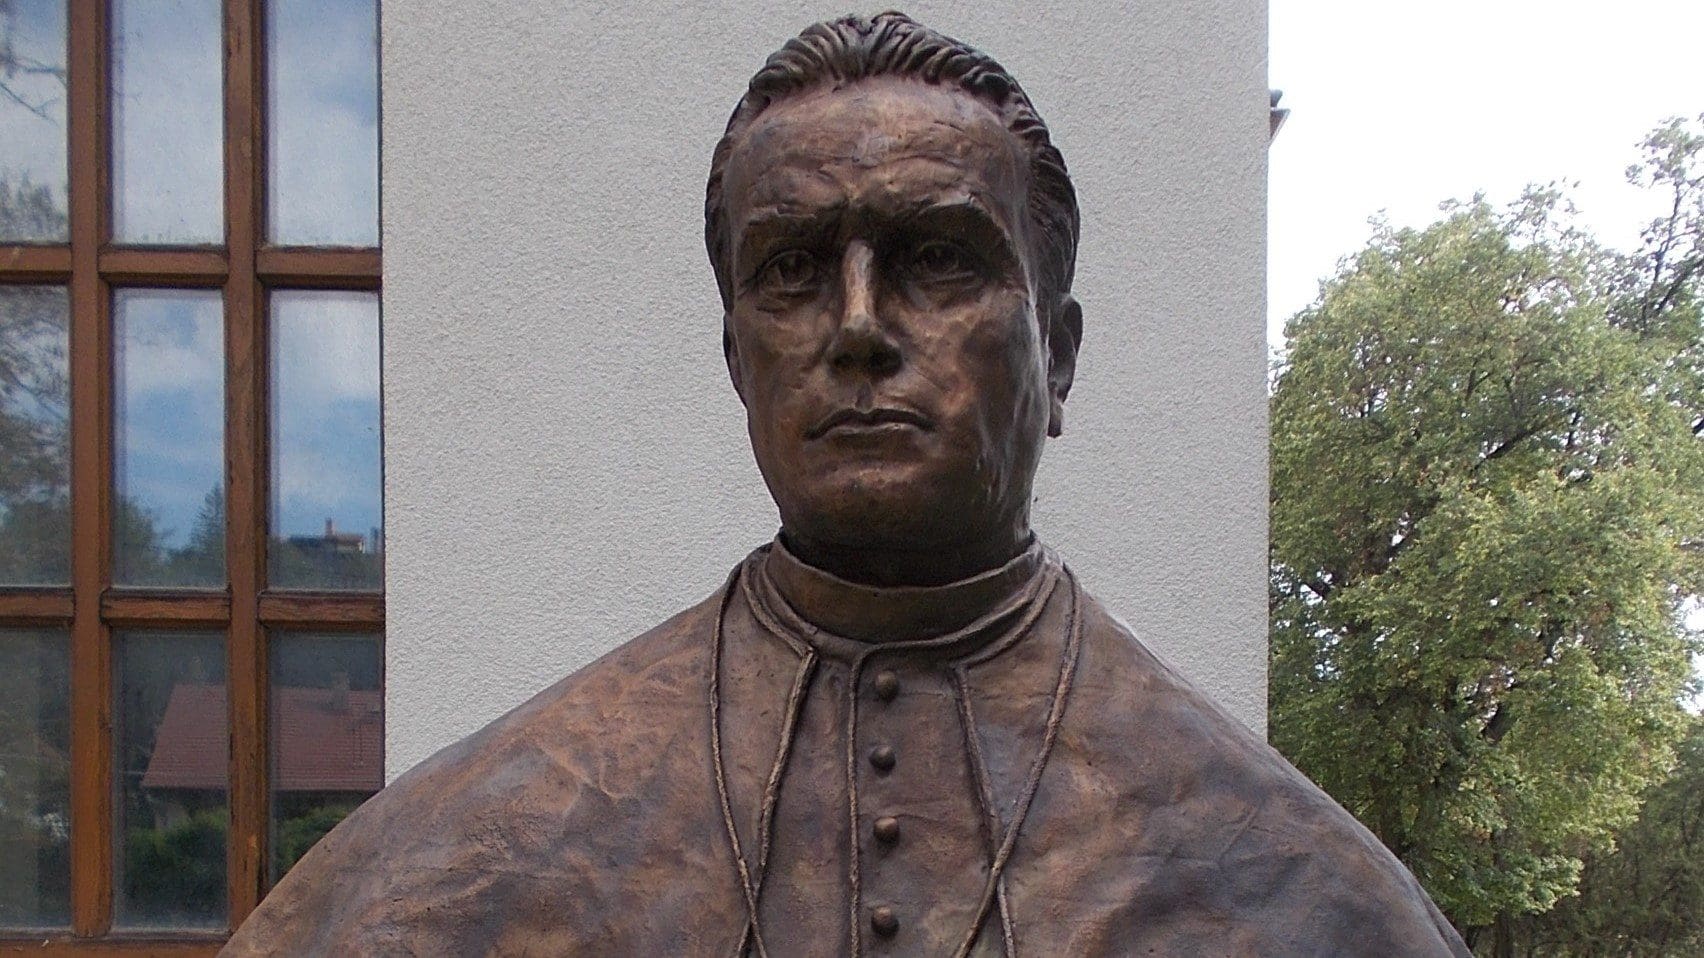 The bust of Ottokár Prohászka near the Roman Catholic church in Budakalász.